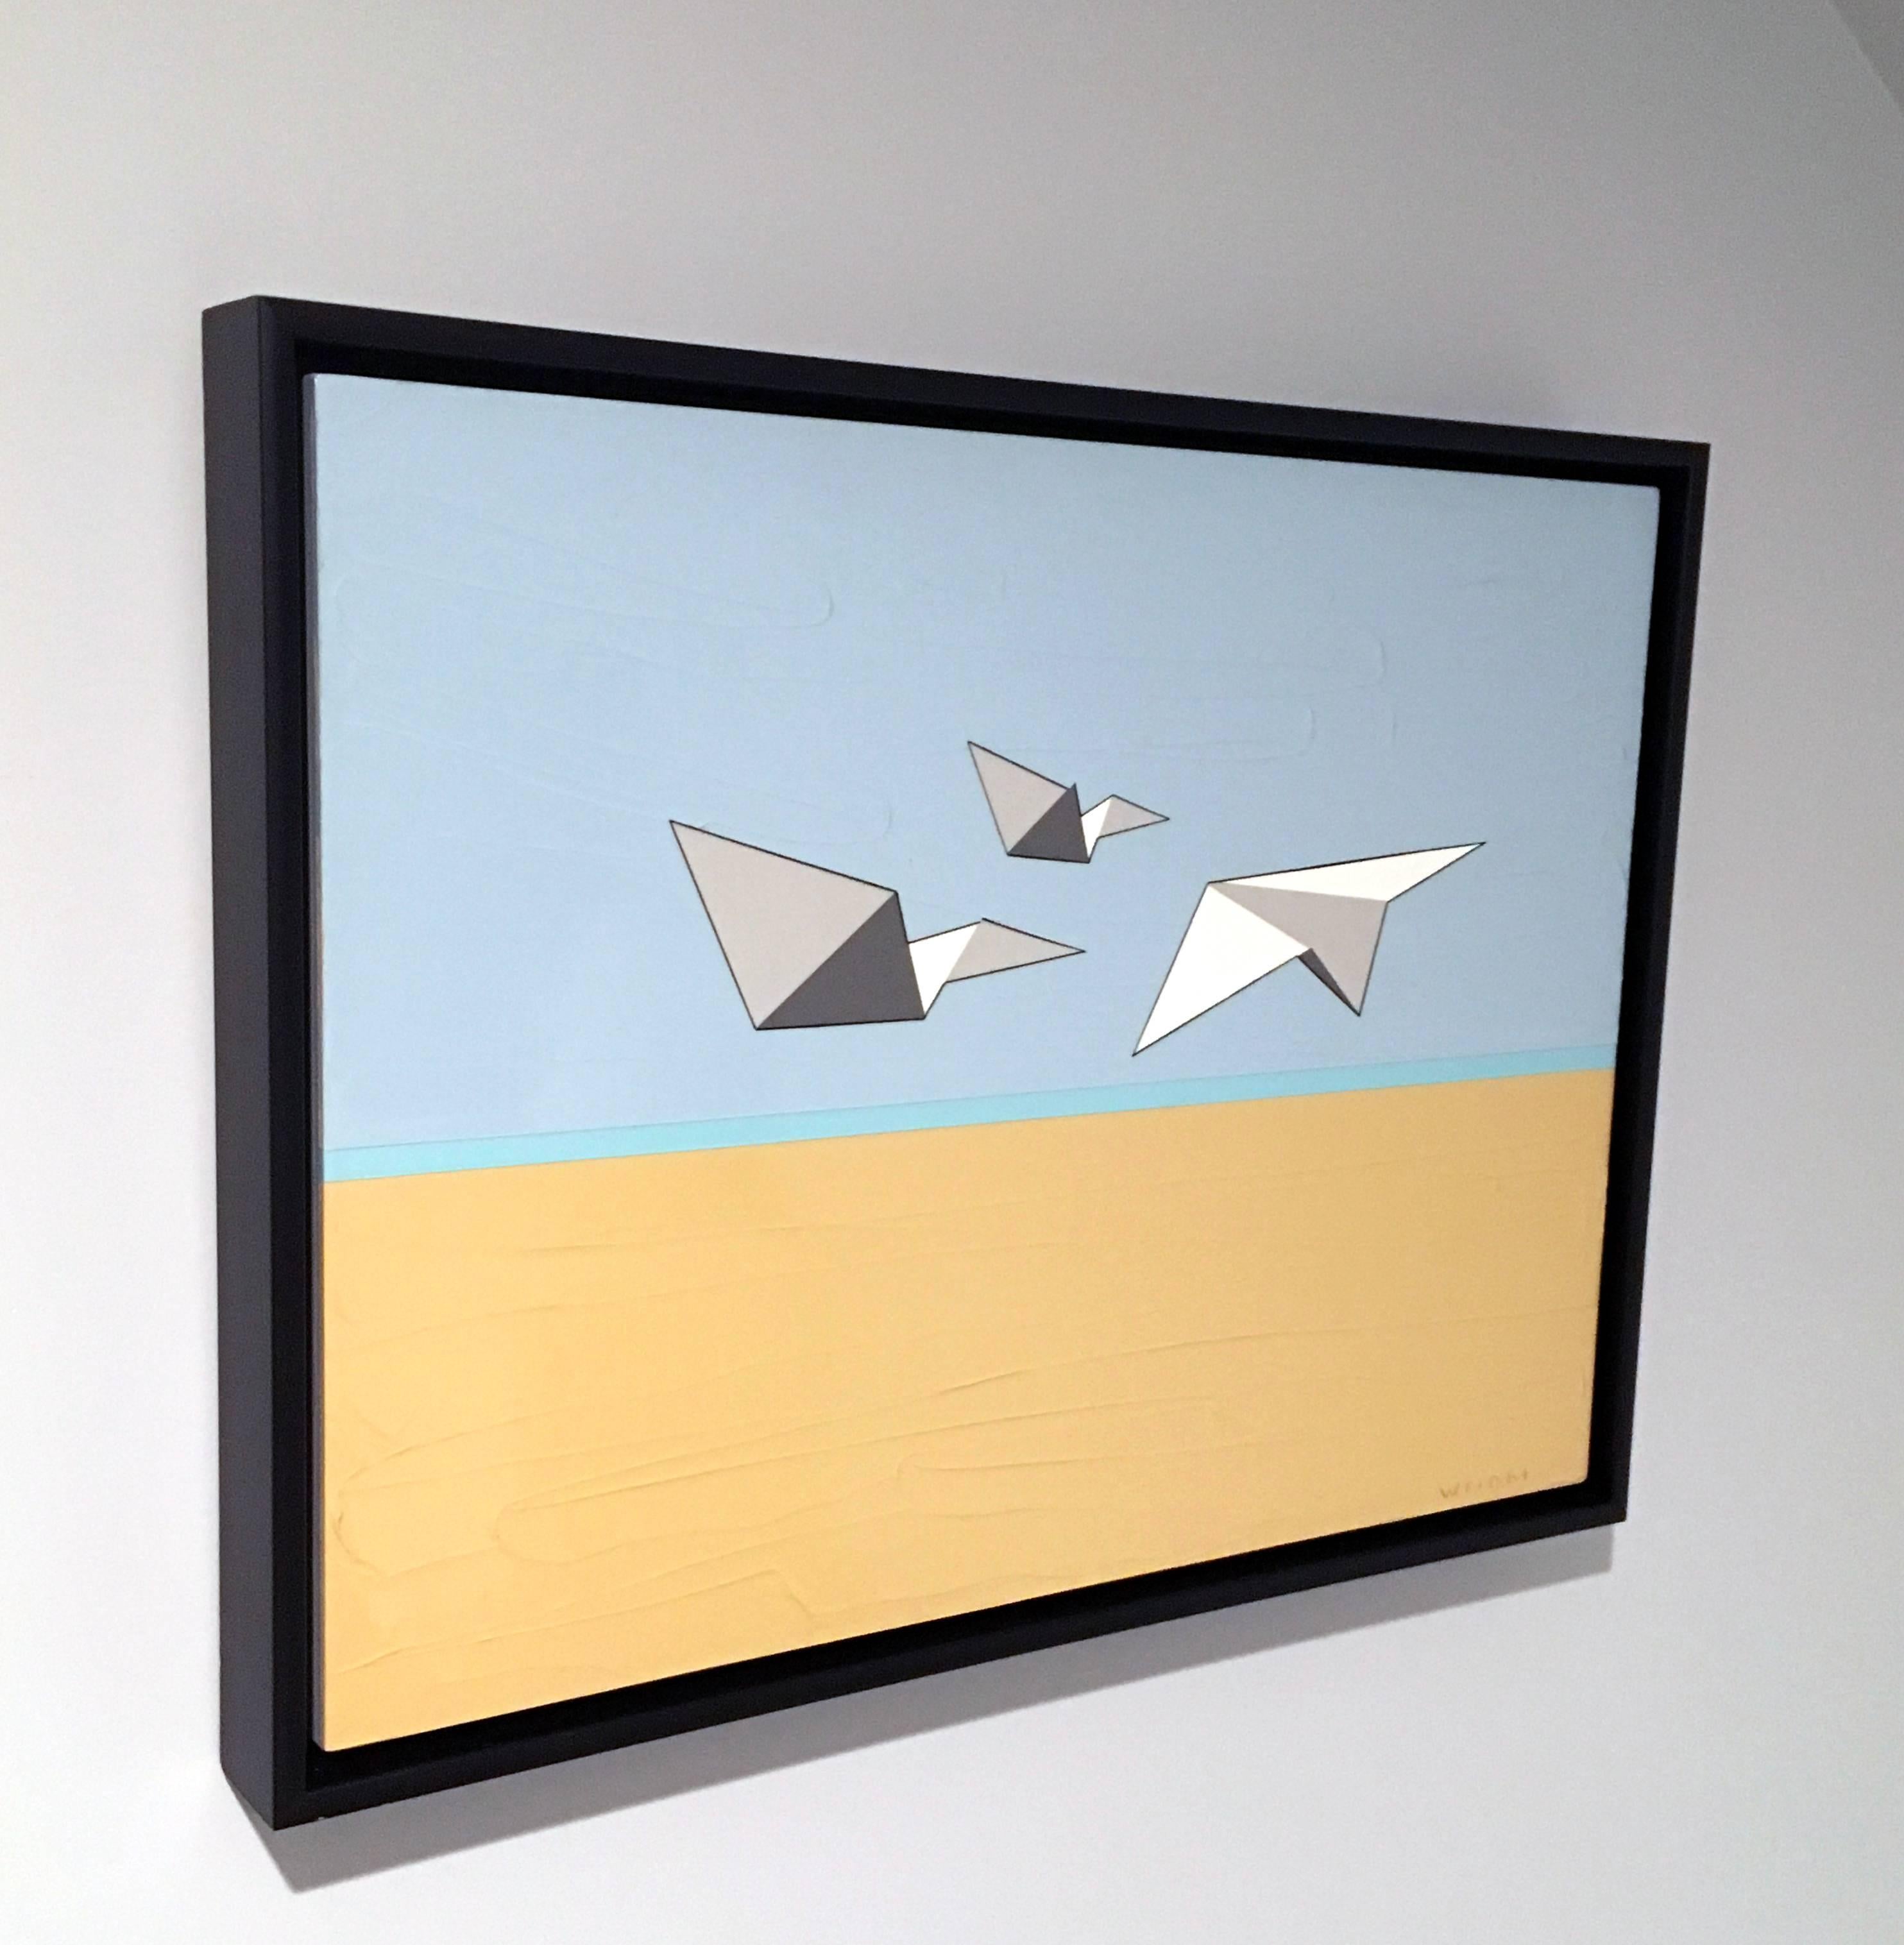 Away We Go, Öl, Acryl, Papier-Flugzeuge, Blau, Weiß, Himmel, Fliegen, Texturiert (Zeitgenössisch), Painting, von Jason Wright